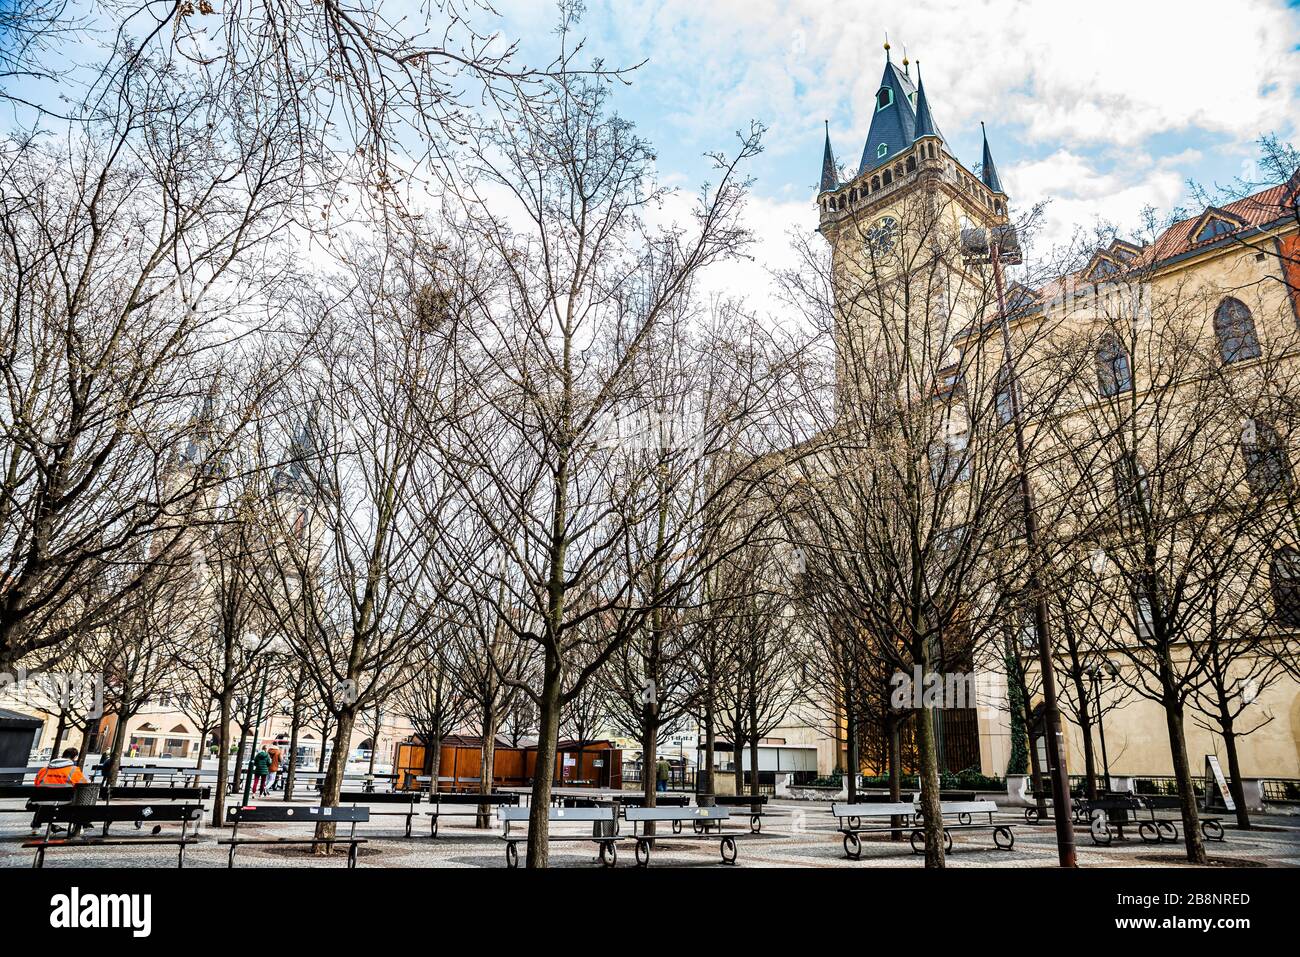 Prag, Tschechien - 19. März 2020. Leere Bank im Park hinter dem alten Rathaus während der Corona-Viruskrise Stockfoto